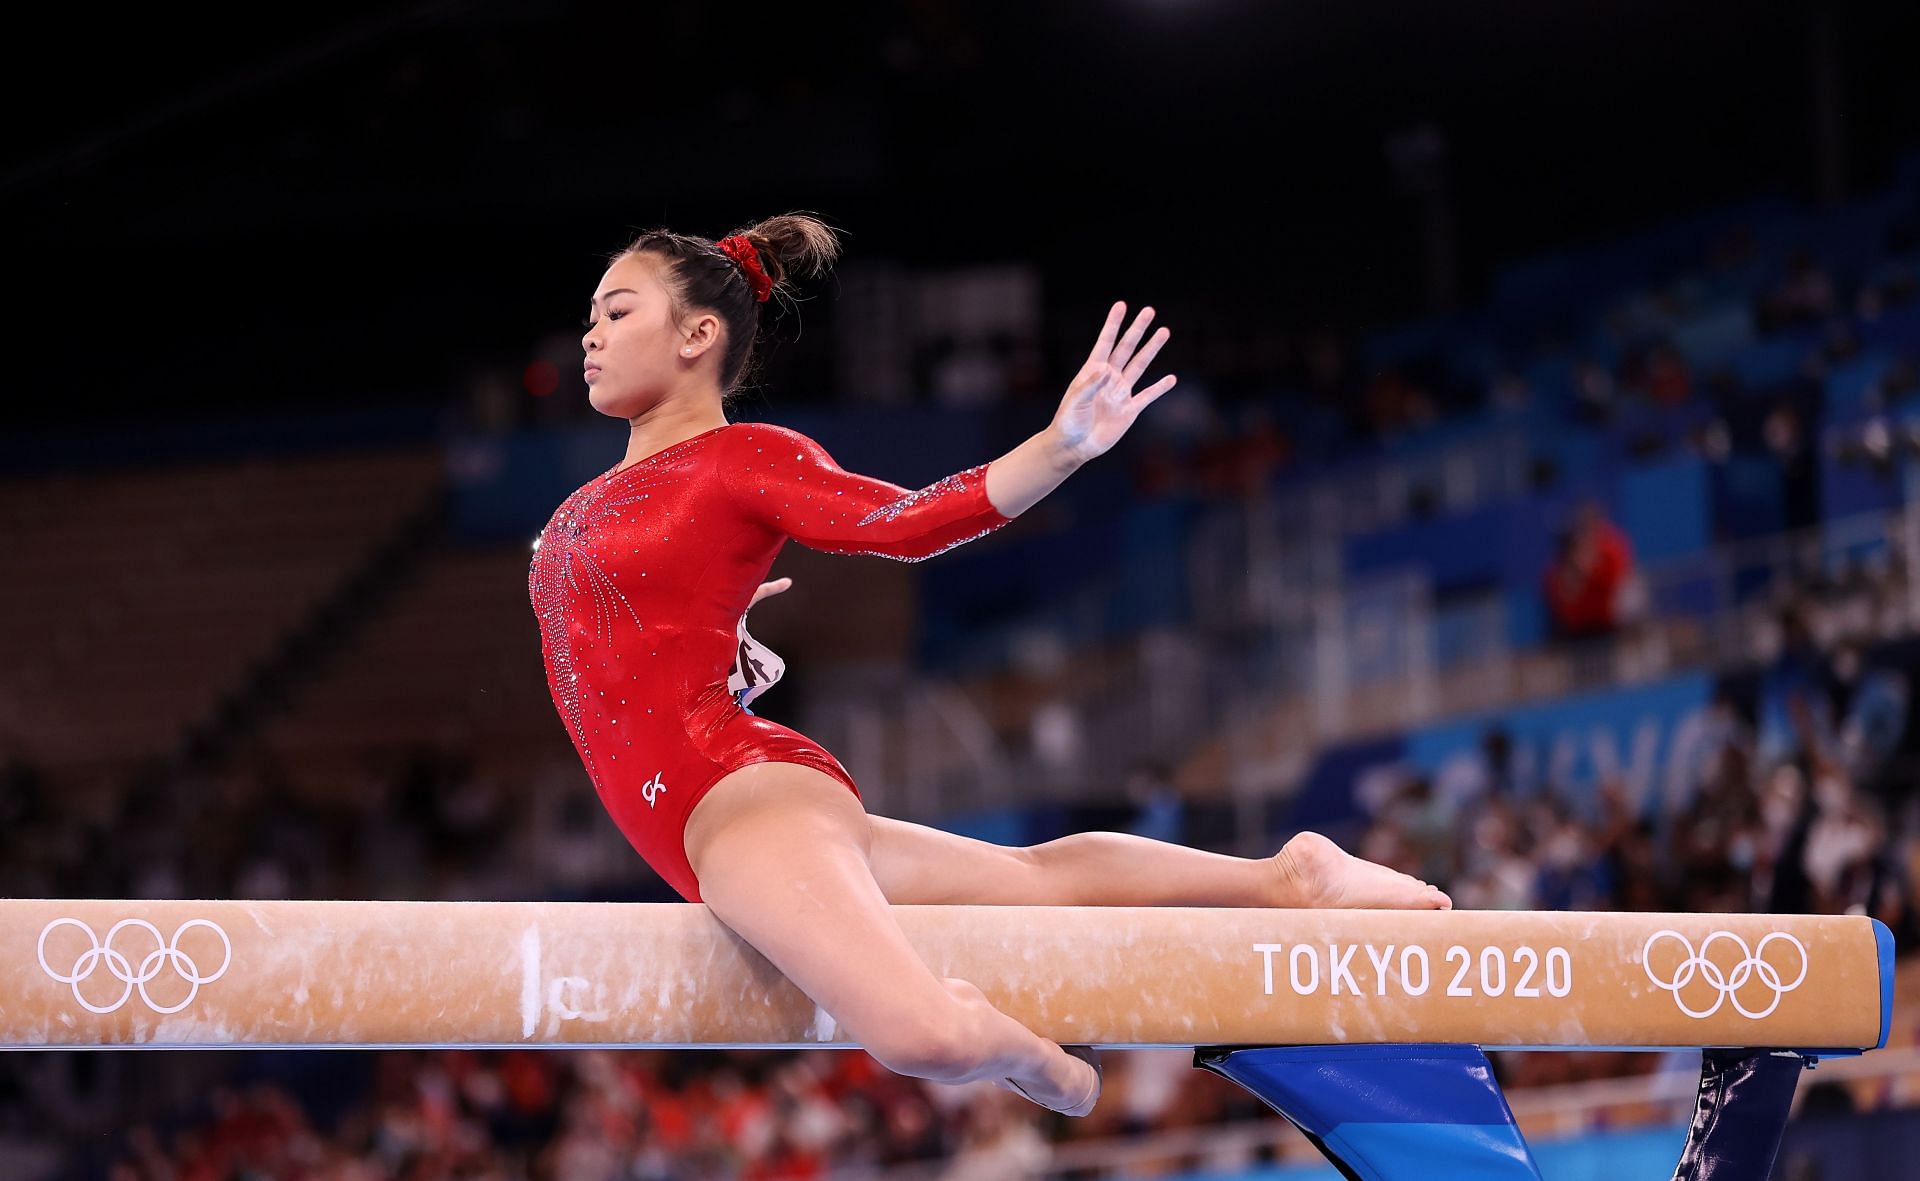 Suni Lee Latest News, Updates, Gymnastics Career & More